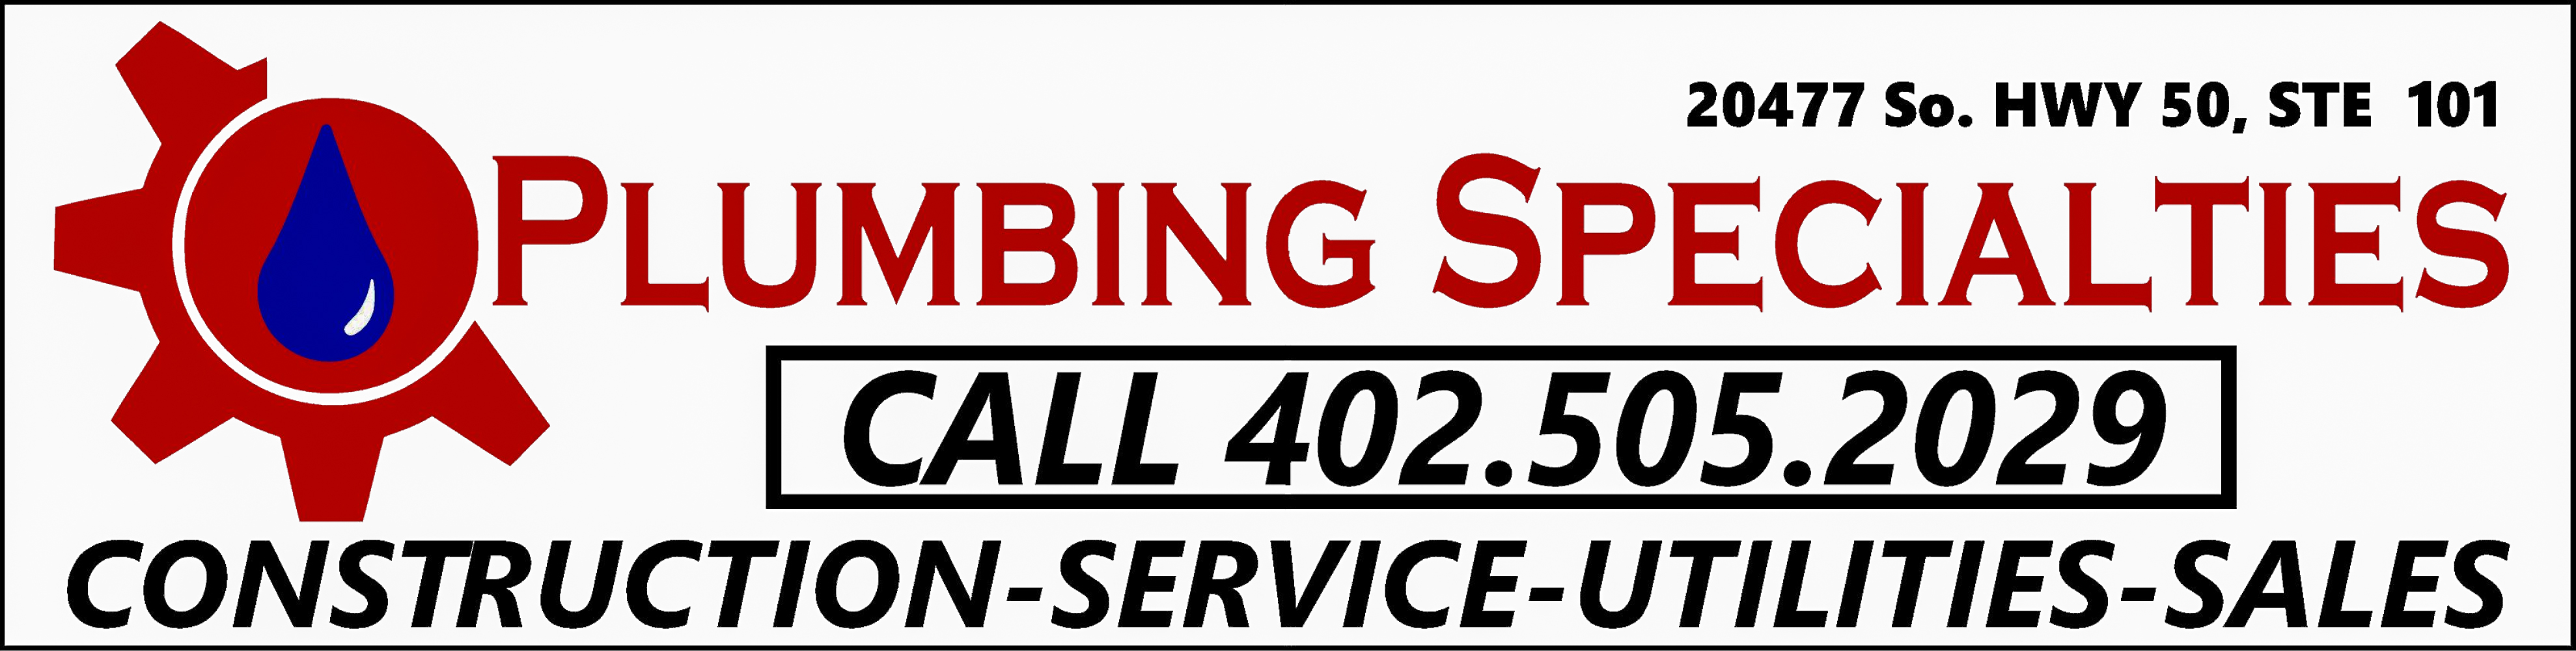 Plumbing Specialties Logo